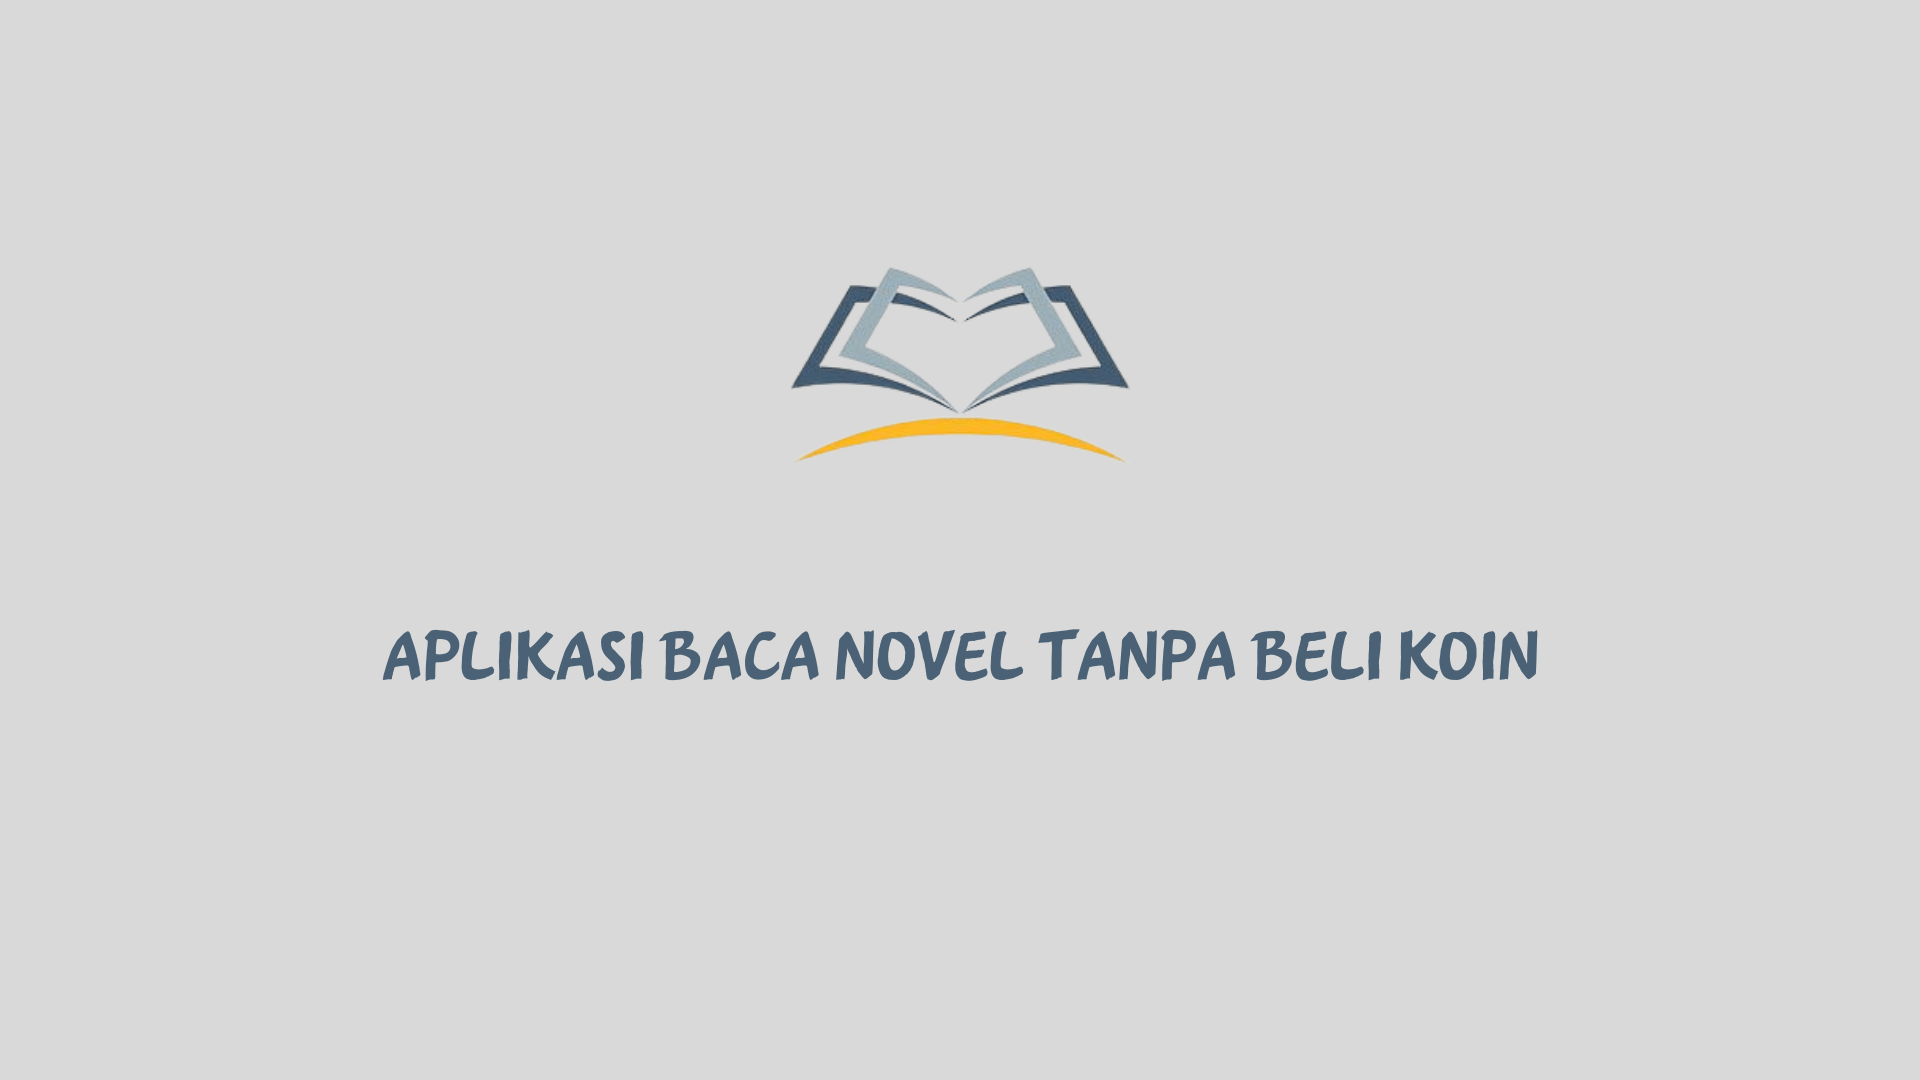 Aplikasi baca novel tanpa beli koin berikut ini bisa Anda gunakan untuk membaca novel tanpa mengeluarkan uang sepeserpun.